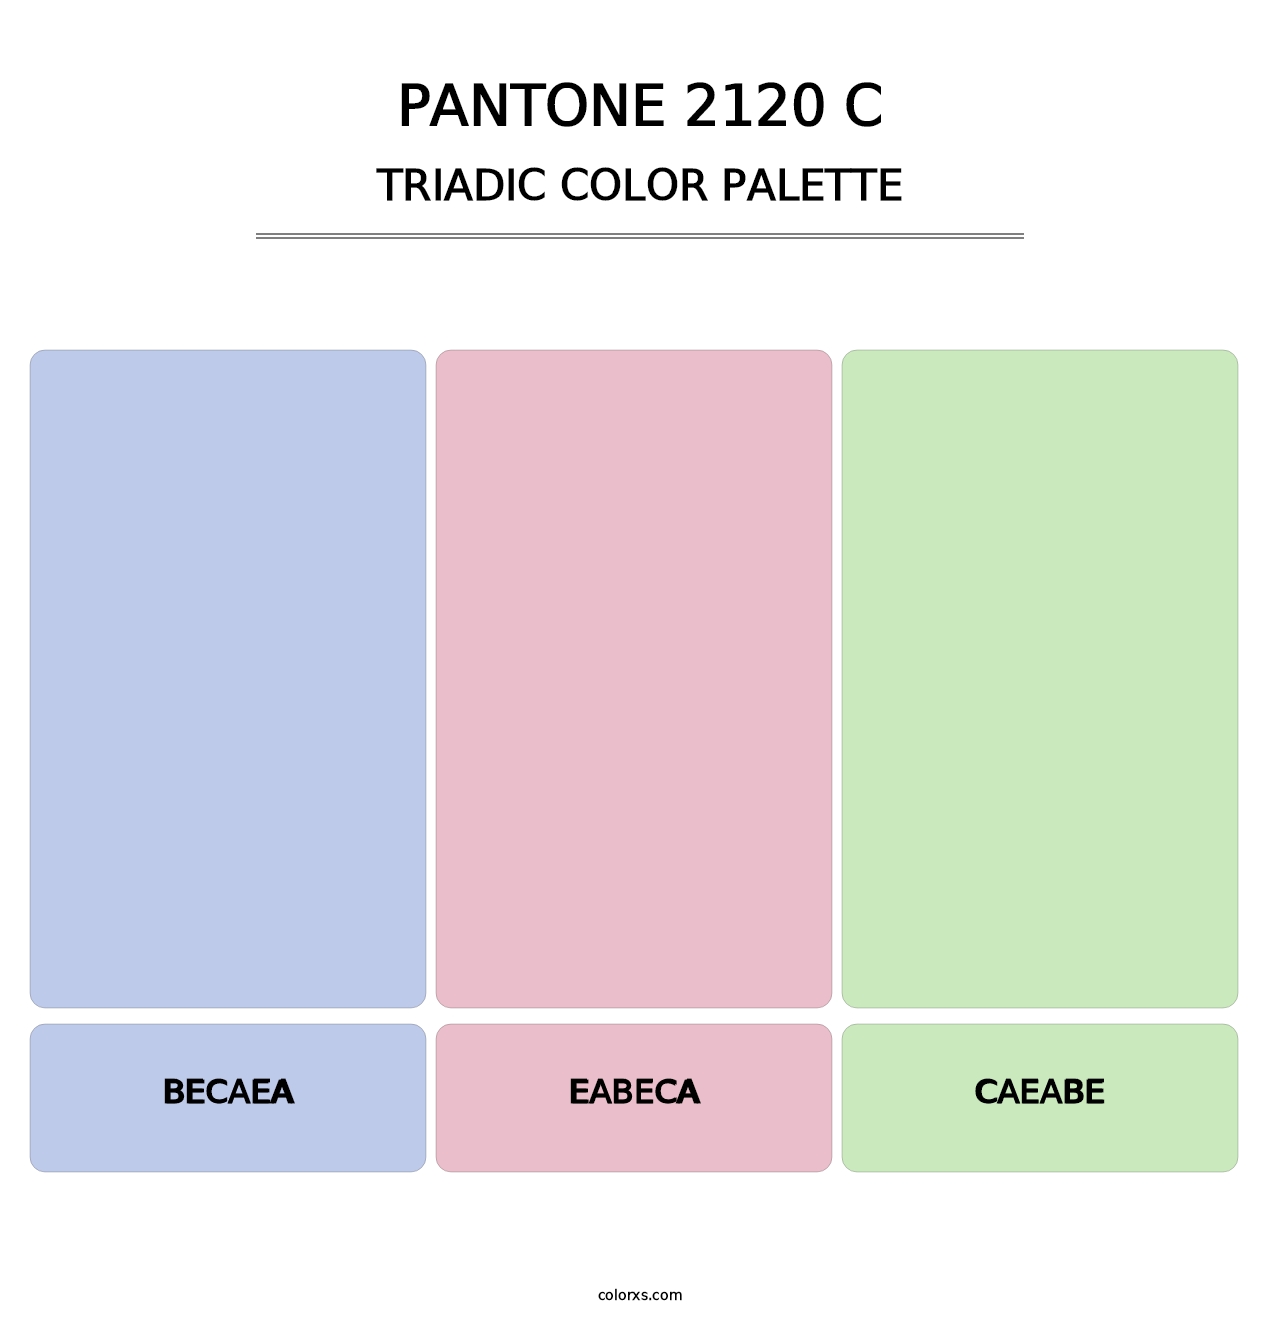 PANTONE 2120 C - Triadic Color Palette